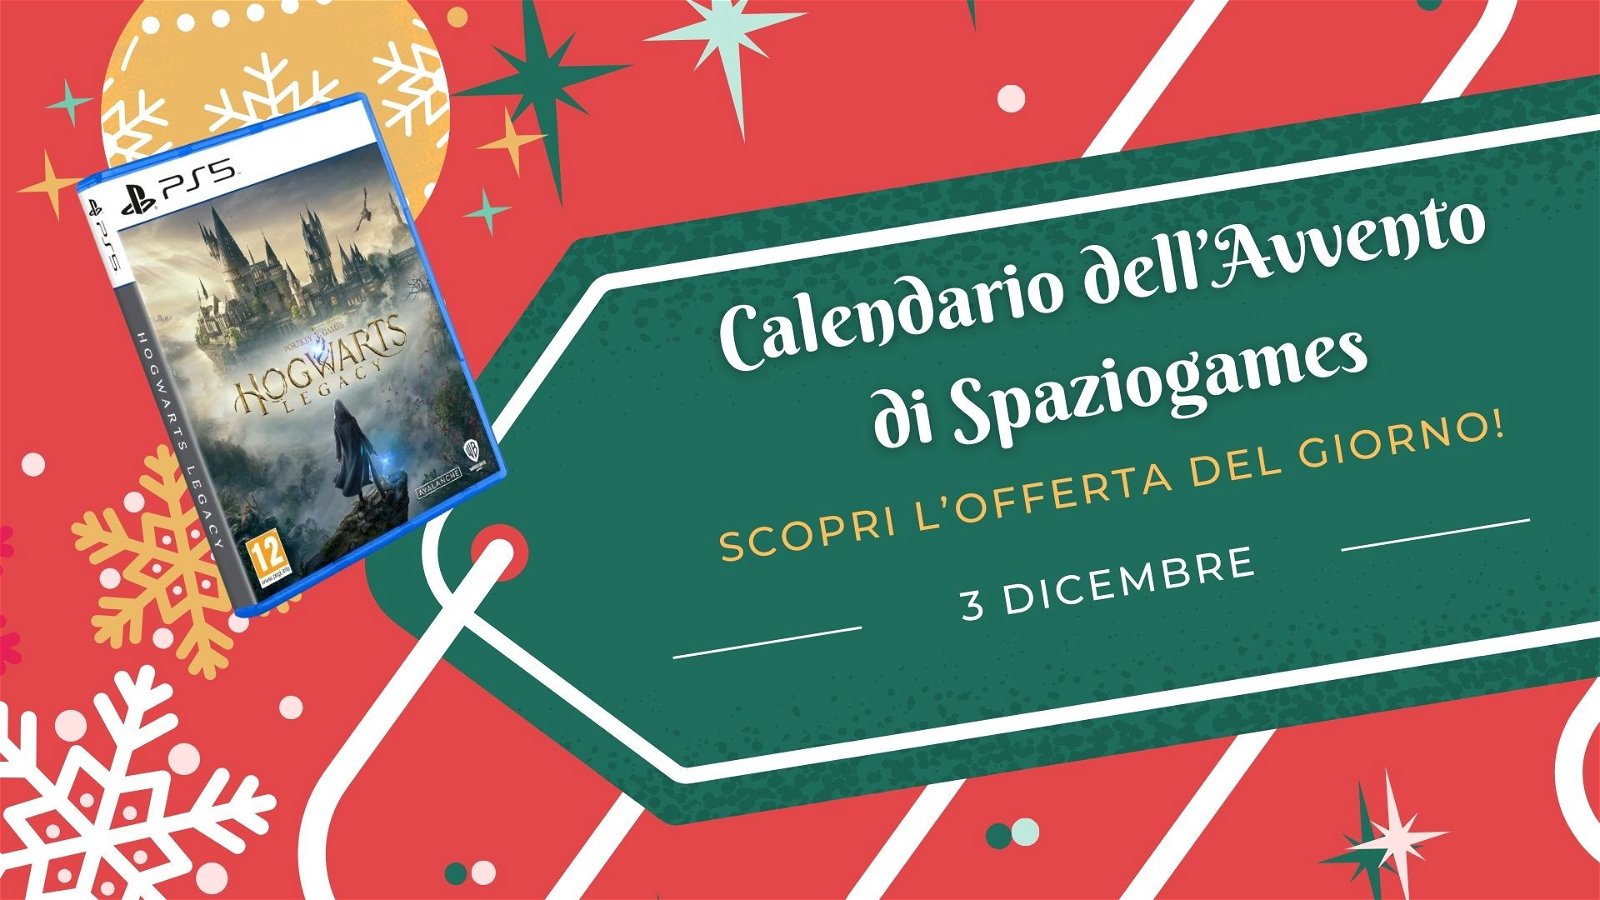 Calendario dell'avvento di Spaziogames: scopri l'offerta del 3 dicembre